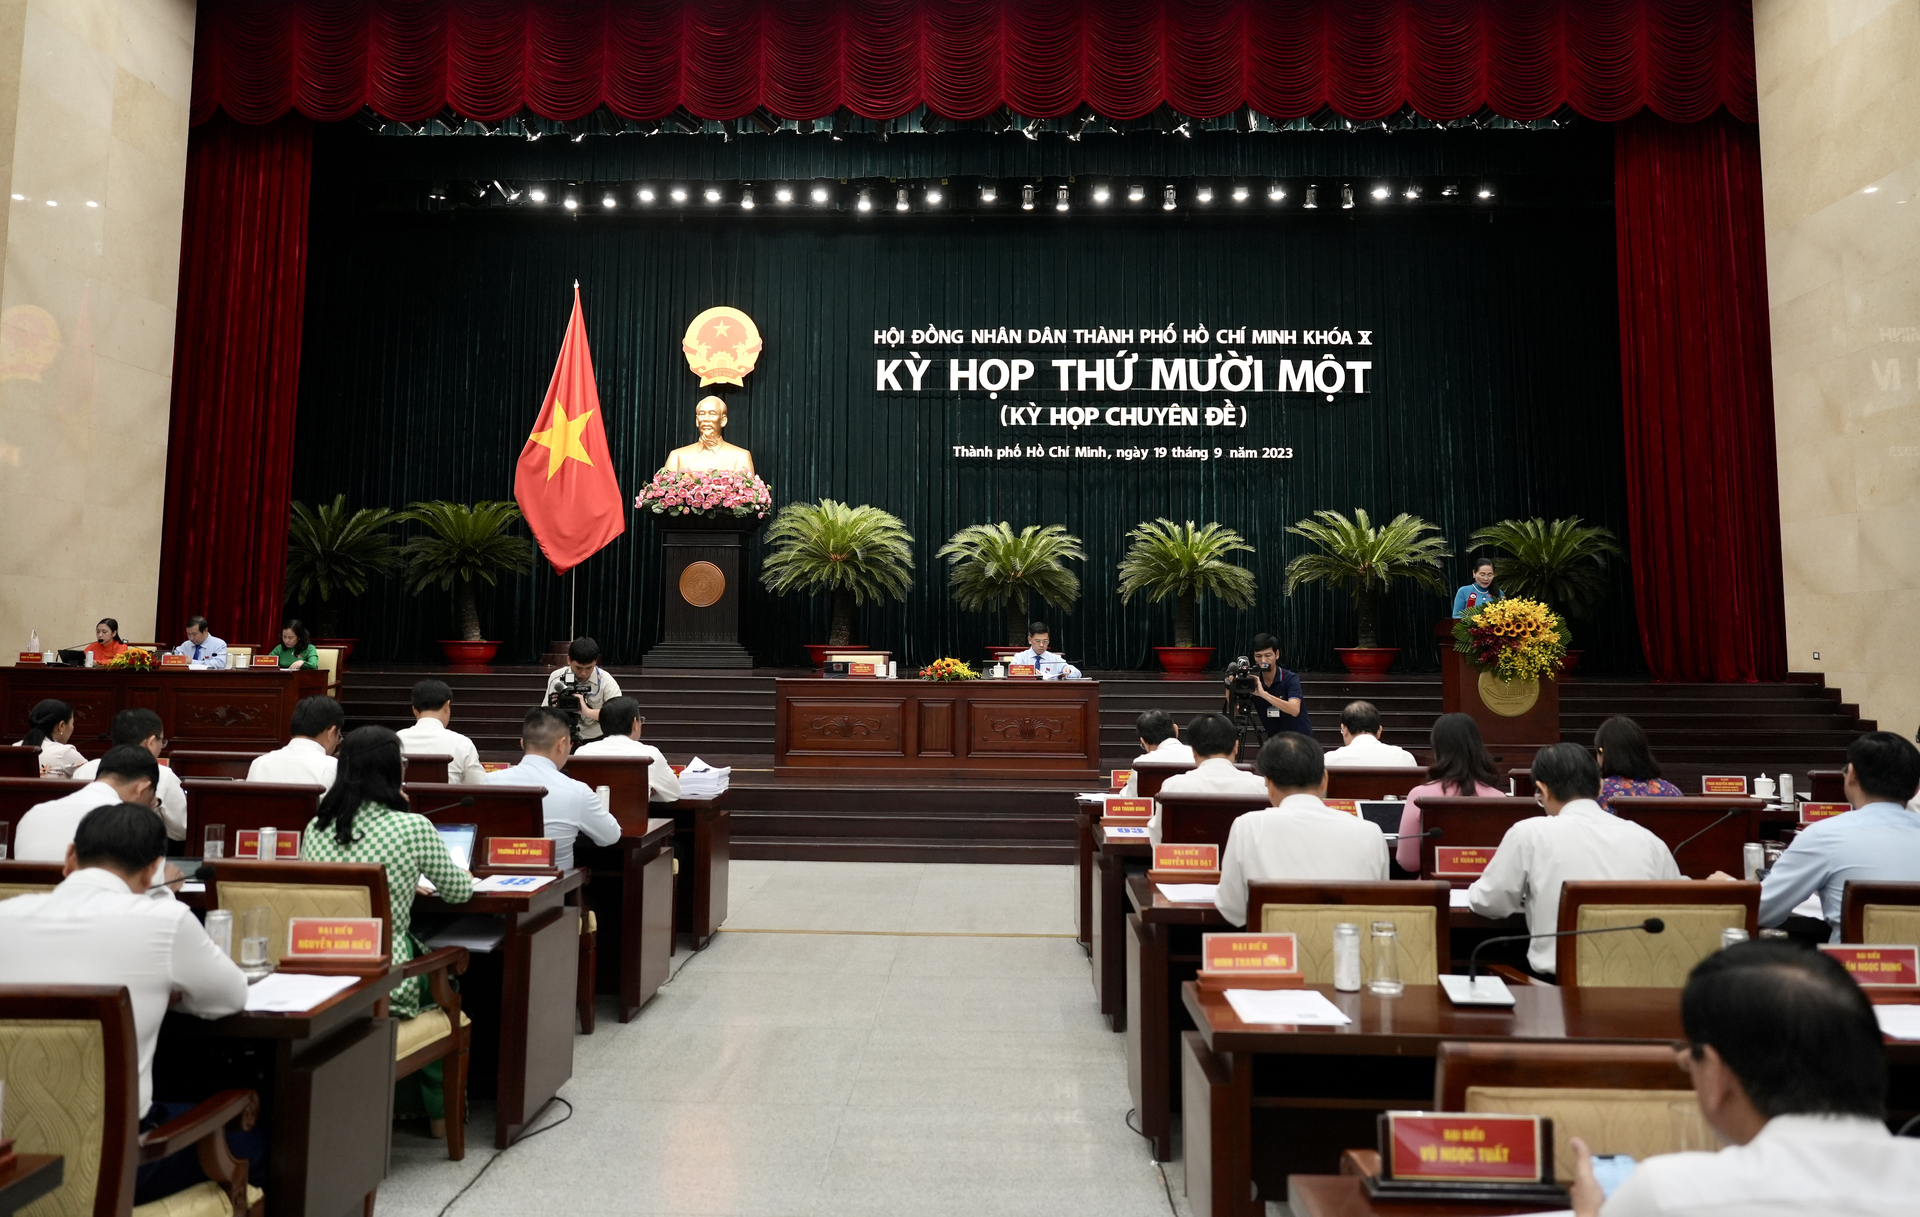 Sáng 19/9, kỳ họp thứ mười một (kỳ họp chuyên đề) HĐND TP.HCM khóa X nhiệm kỳ 2021-2026 khai mạc. Ảnh: Nguyễn Thủy.